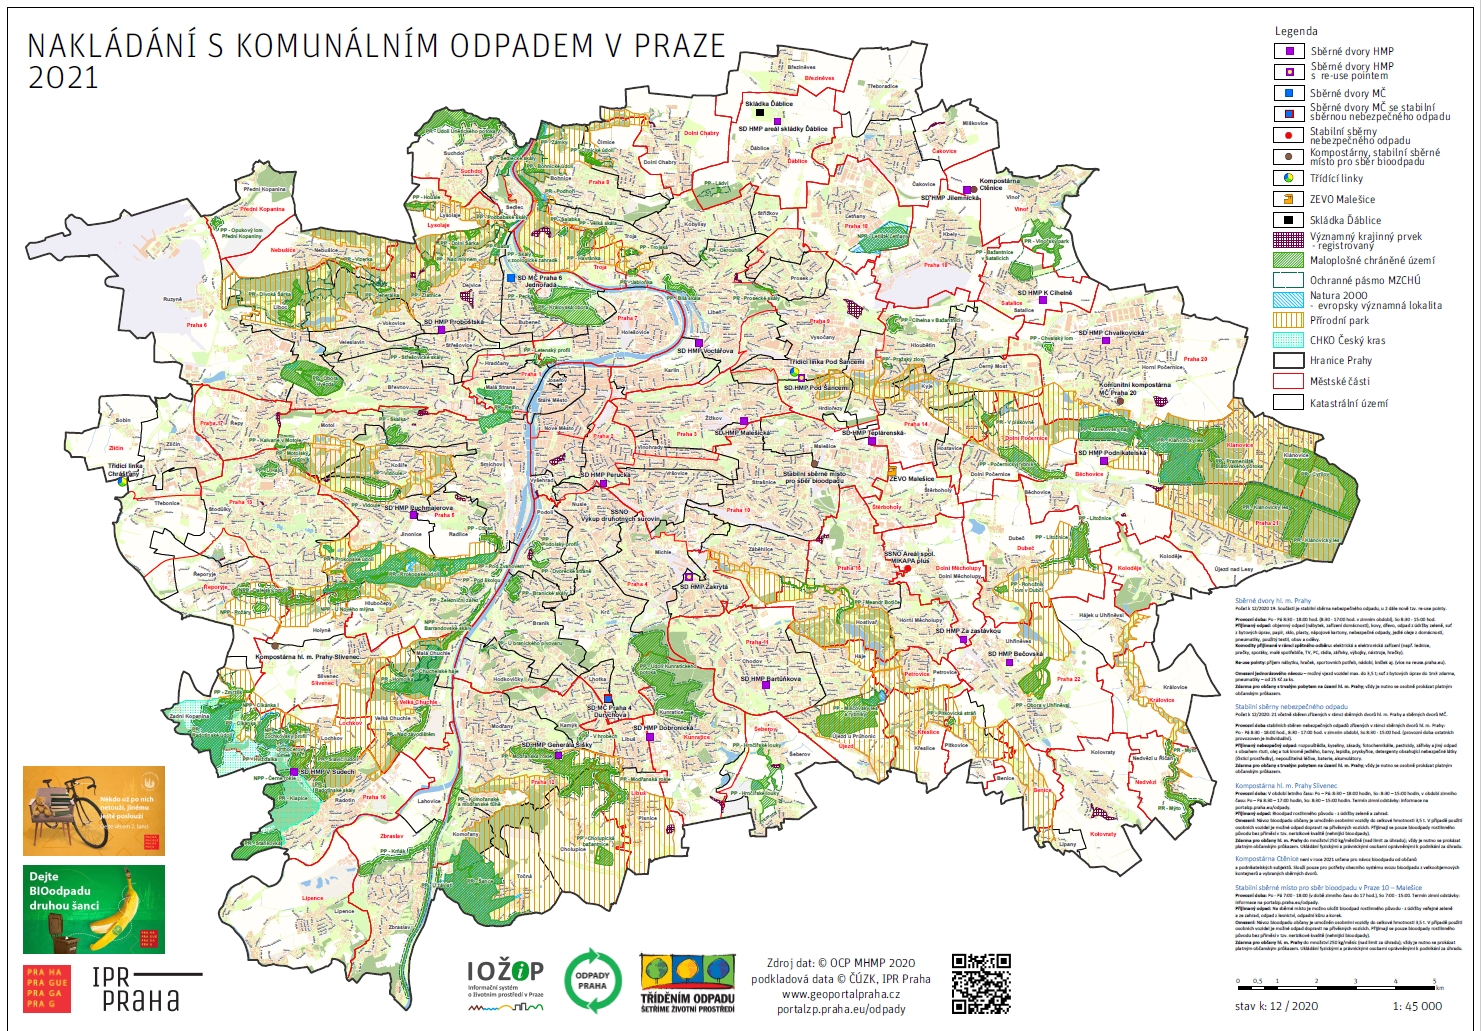 mapa Nakládání s komunálním odpadem v Praze, verze 12/2020, ilustrační obr.